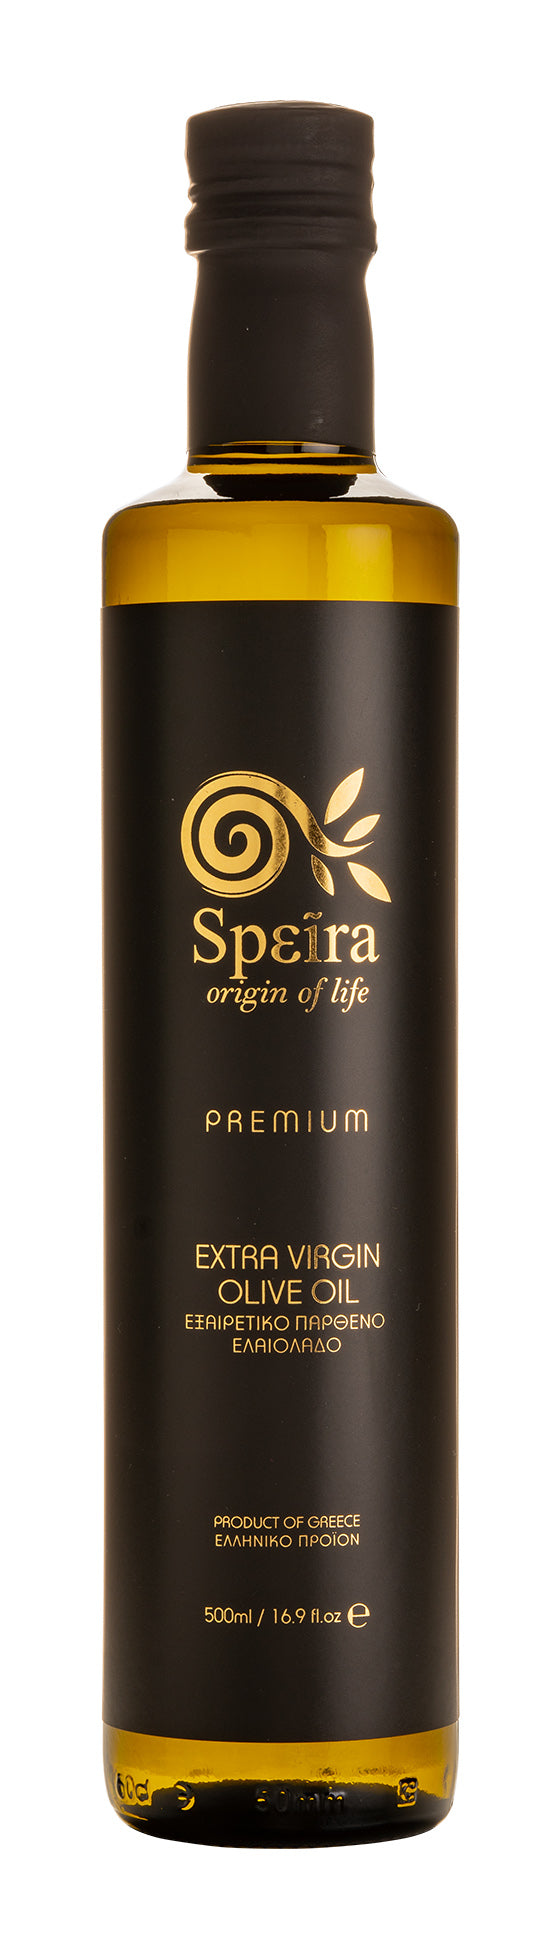 Speira Premium